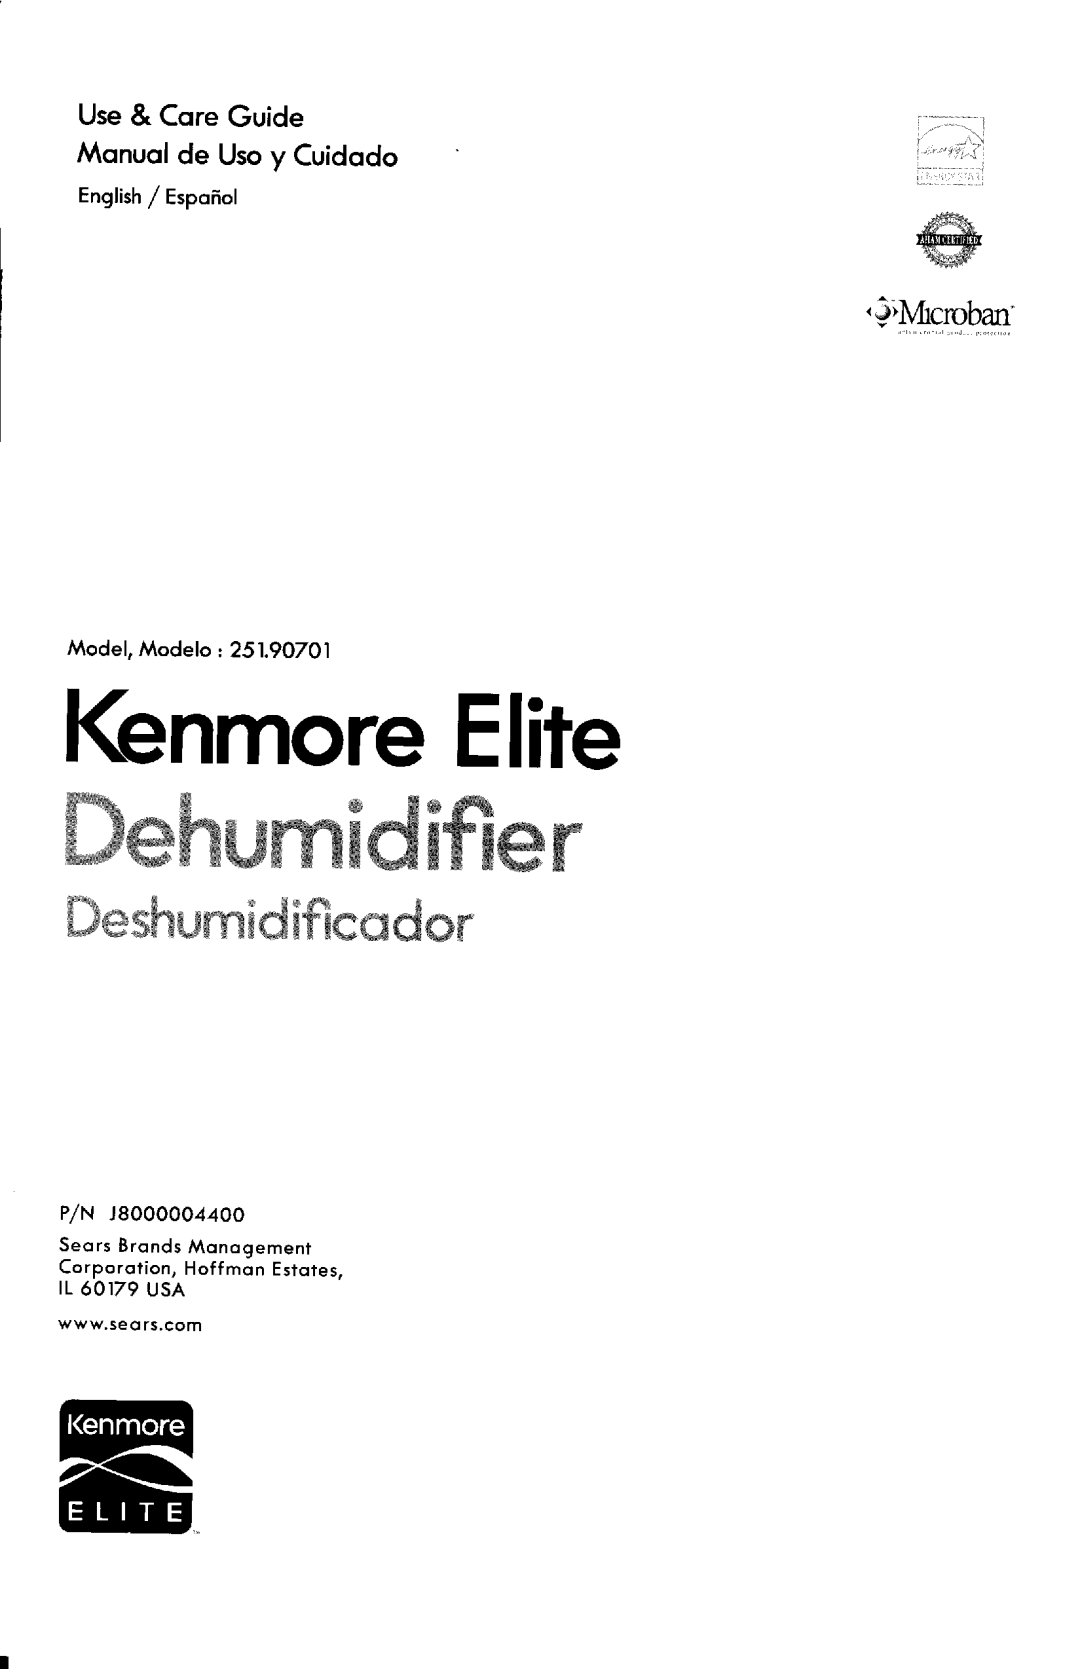 Kenmore 251.907Q1 manual 3Mrcroban, lGnmoreElite ffiwMwwWN$ffiwm, ffiwsNwffi$N$ffimmNmx, English/ Espofiol, i .. . . -..t 